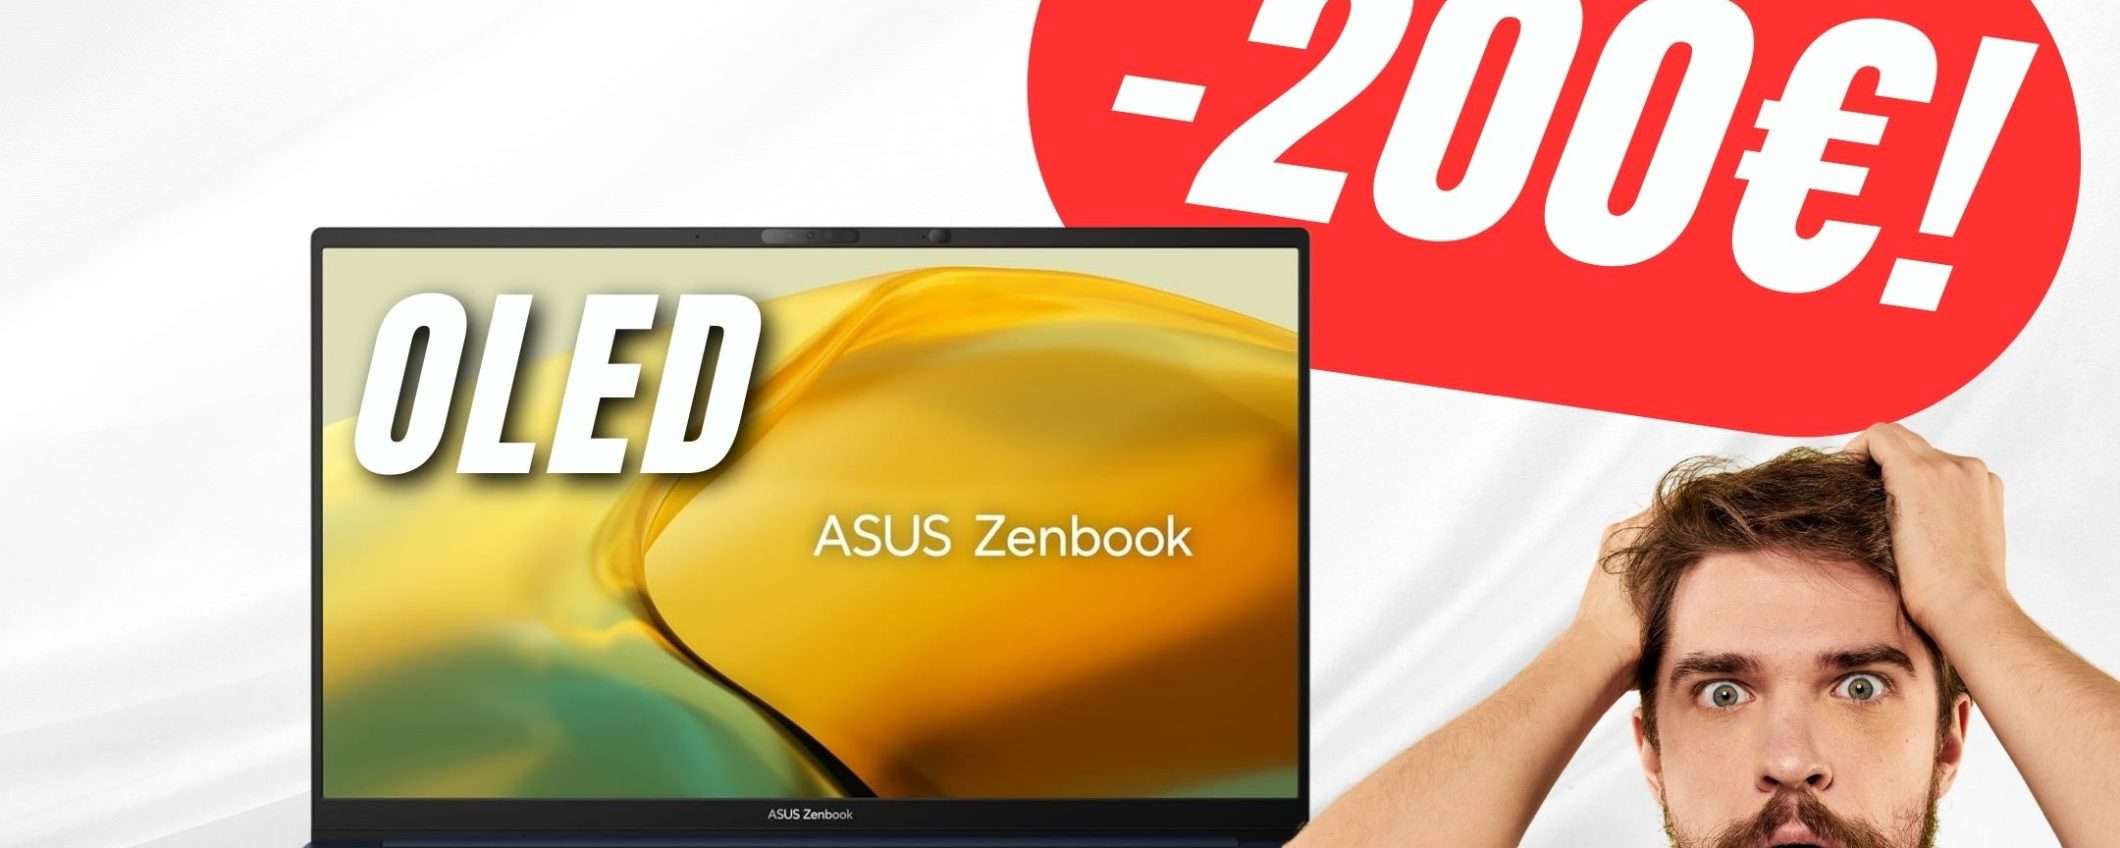 Asus Zenbook 15 OLED sarà il tuo prossimo PC Portatile grazie a questo SCONTO